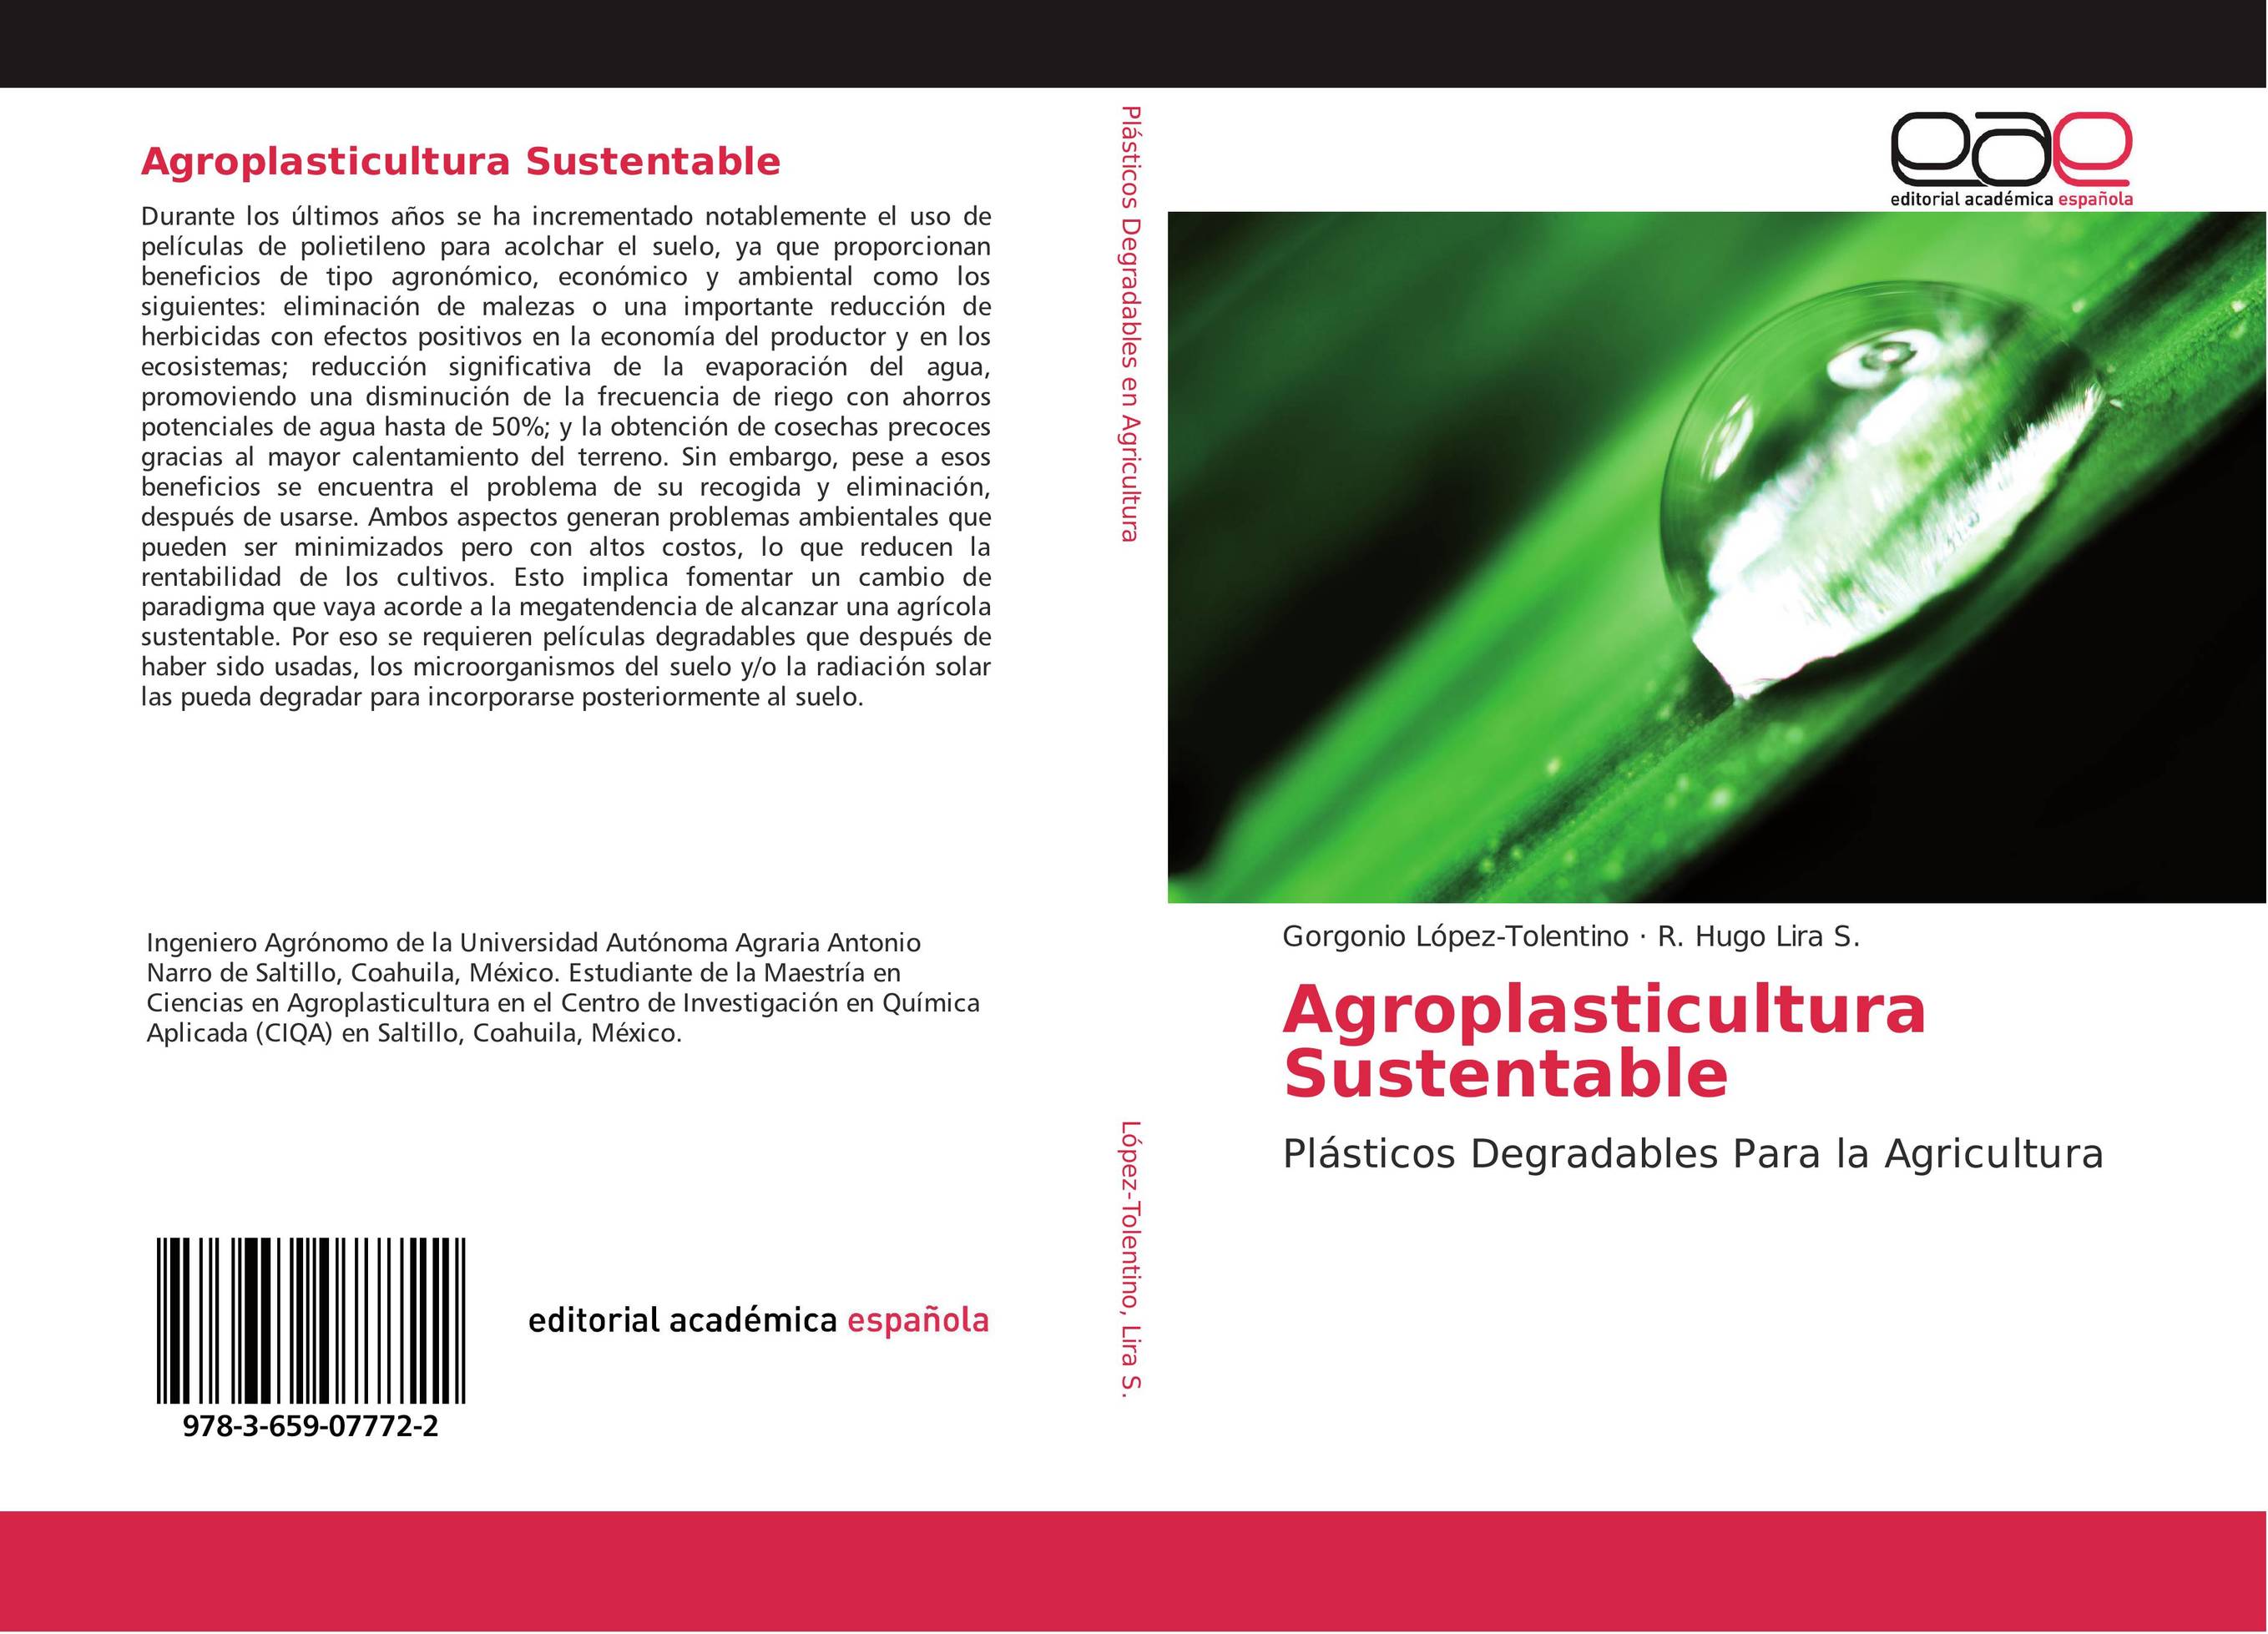 Agroplasticultura Sustentable